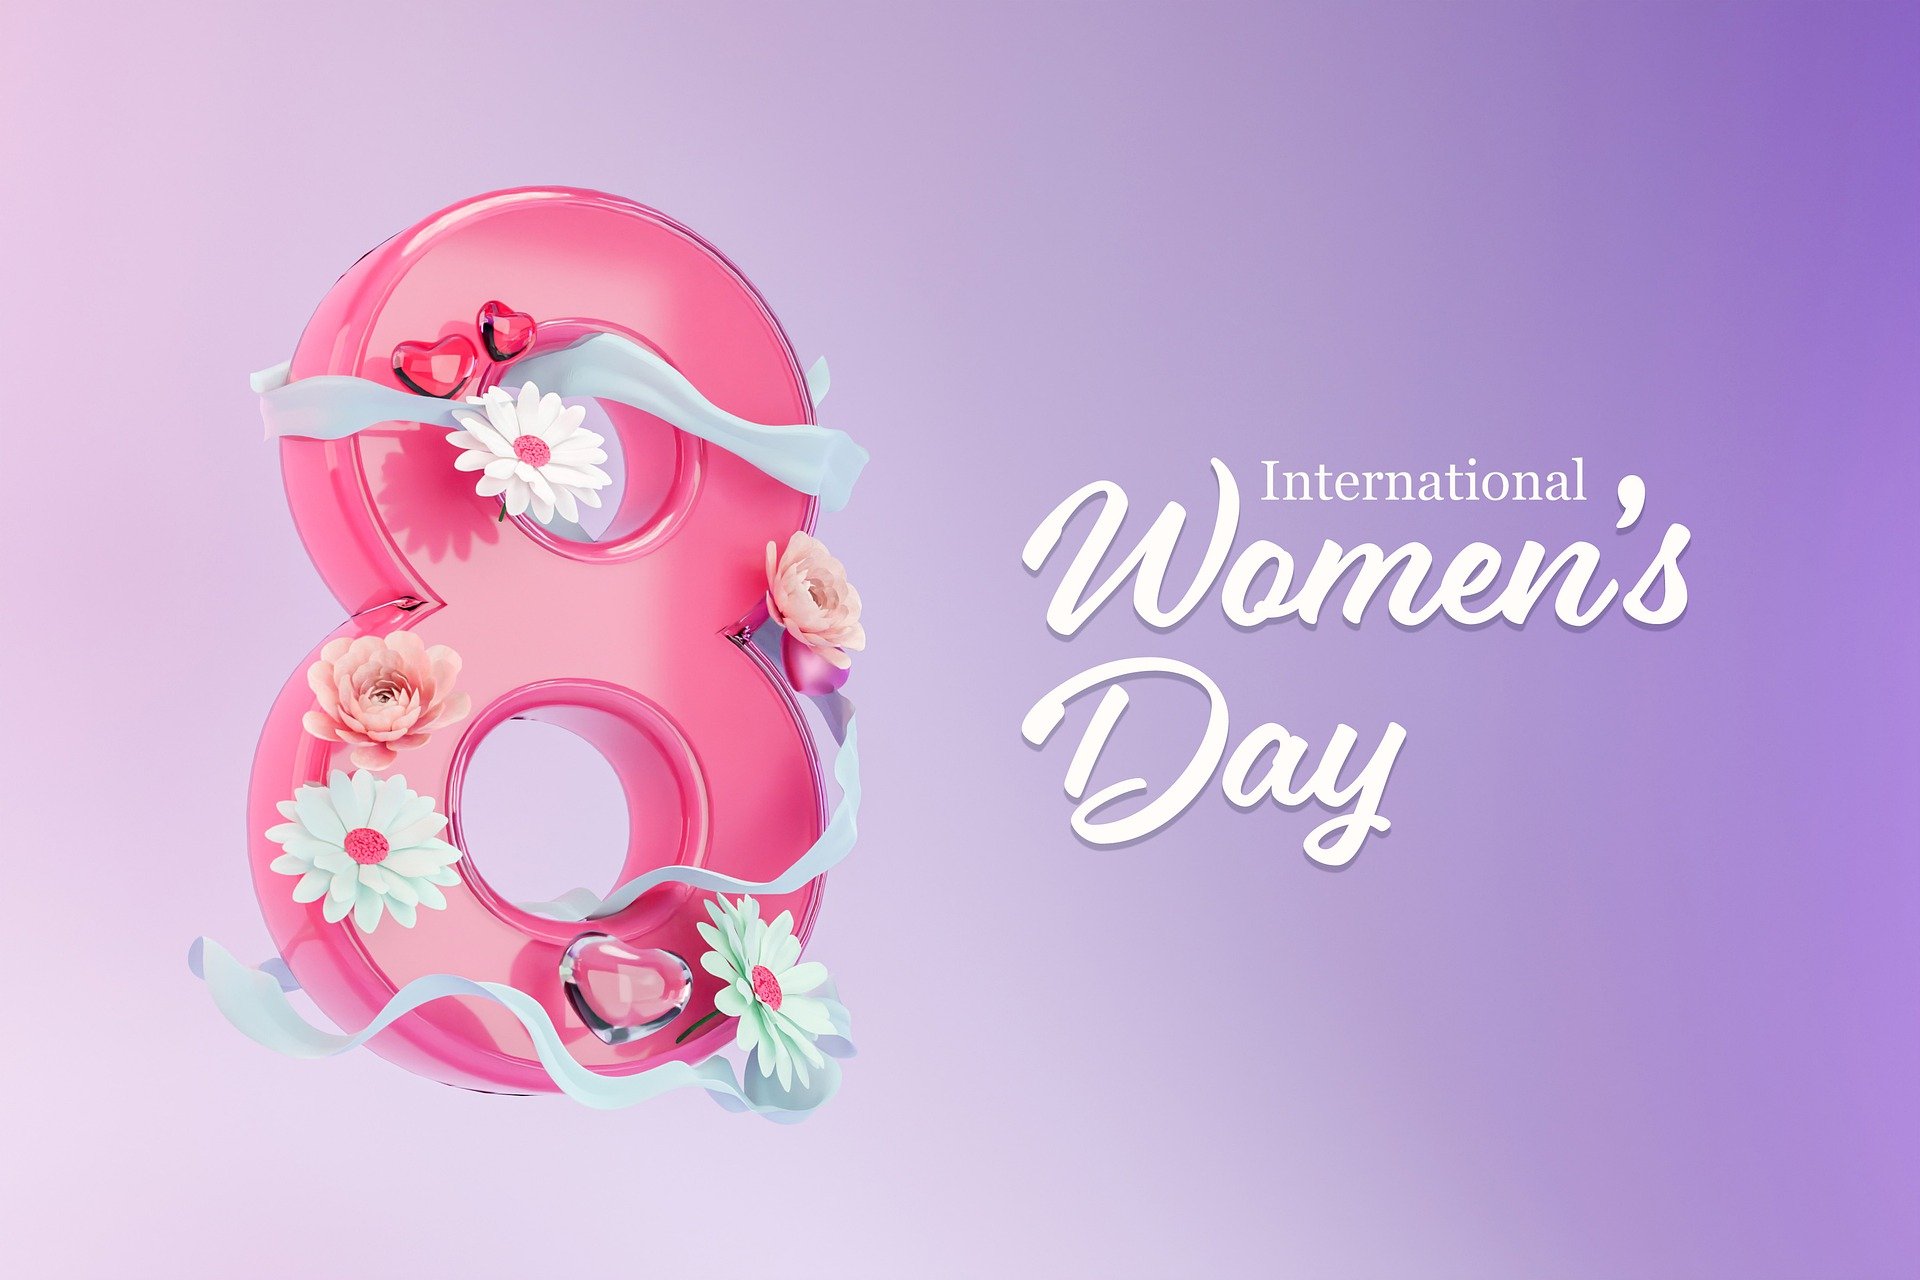 Anneye, sevgiliye, eşe en güzel, anlamlı 8 Mart Dünya Kadınlar Günü mesajları 2022| Kadınlar Gününe özel sözler Whatsapp, Facebook, Instagram